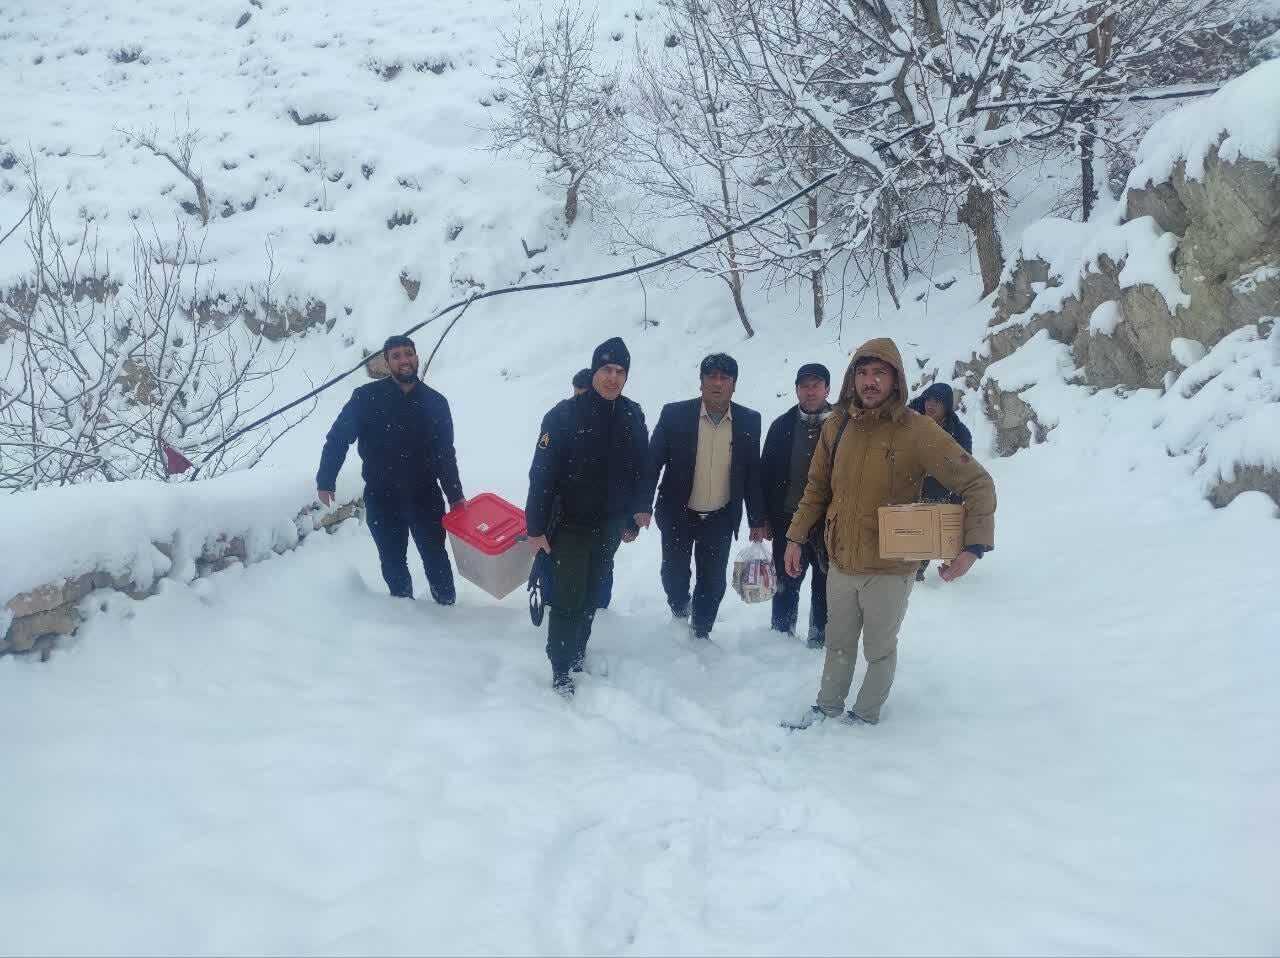 حمل صندوق رای در سرما و یخبندان کوهستان مازندران+عکس